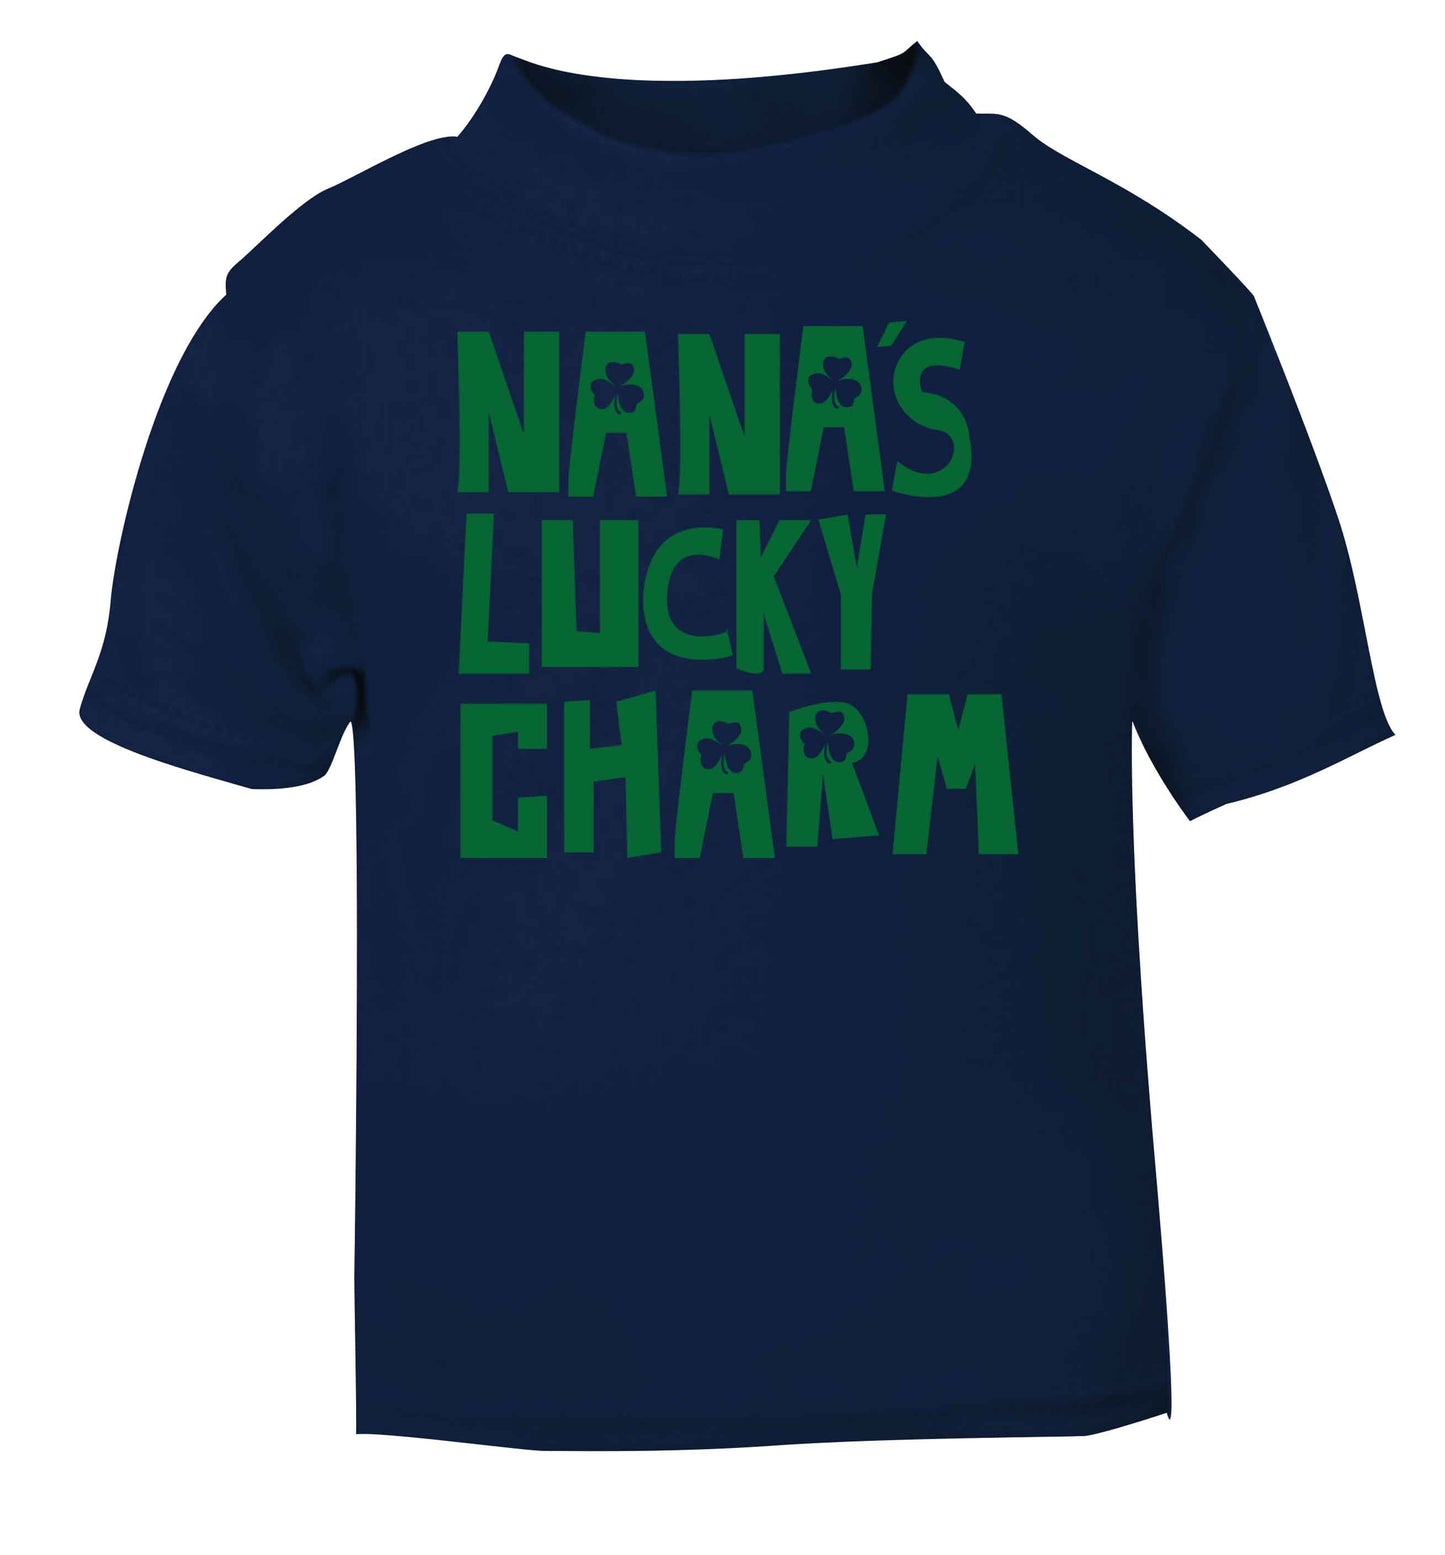 Nana's lucky charm navy baby toddler Tshirt 2 Years